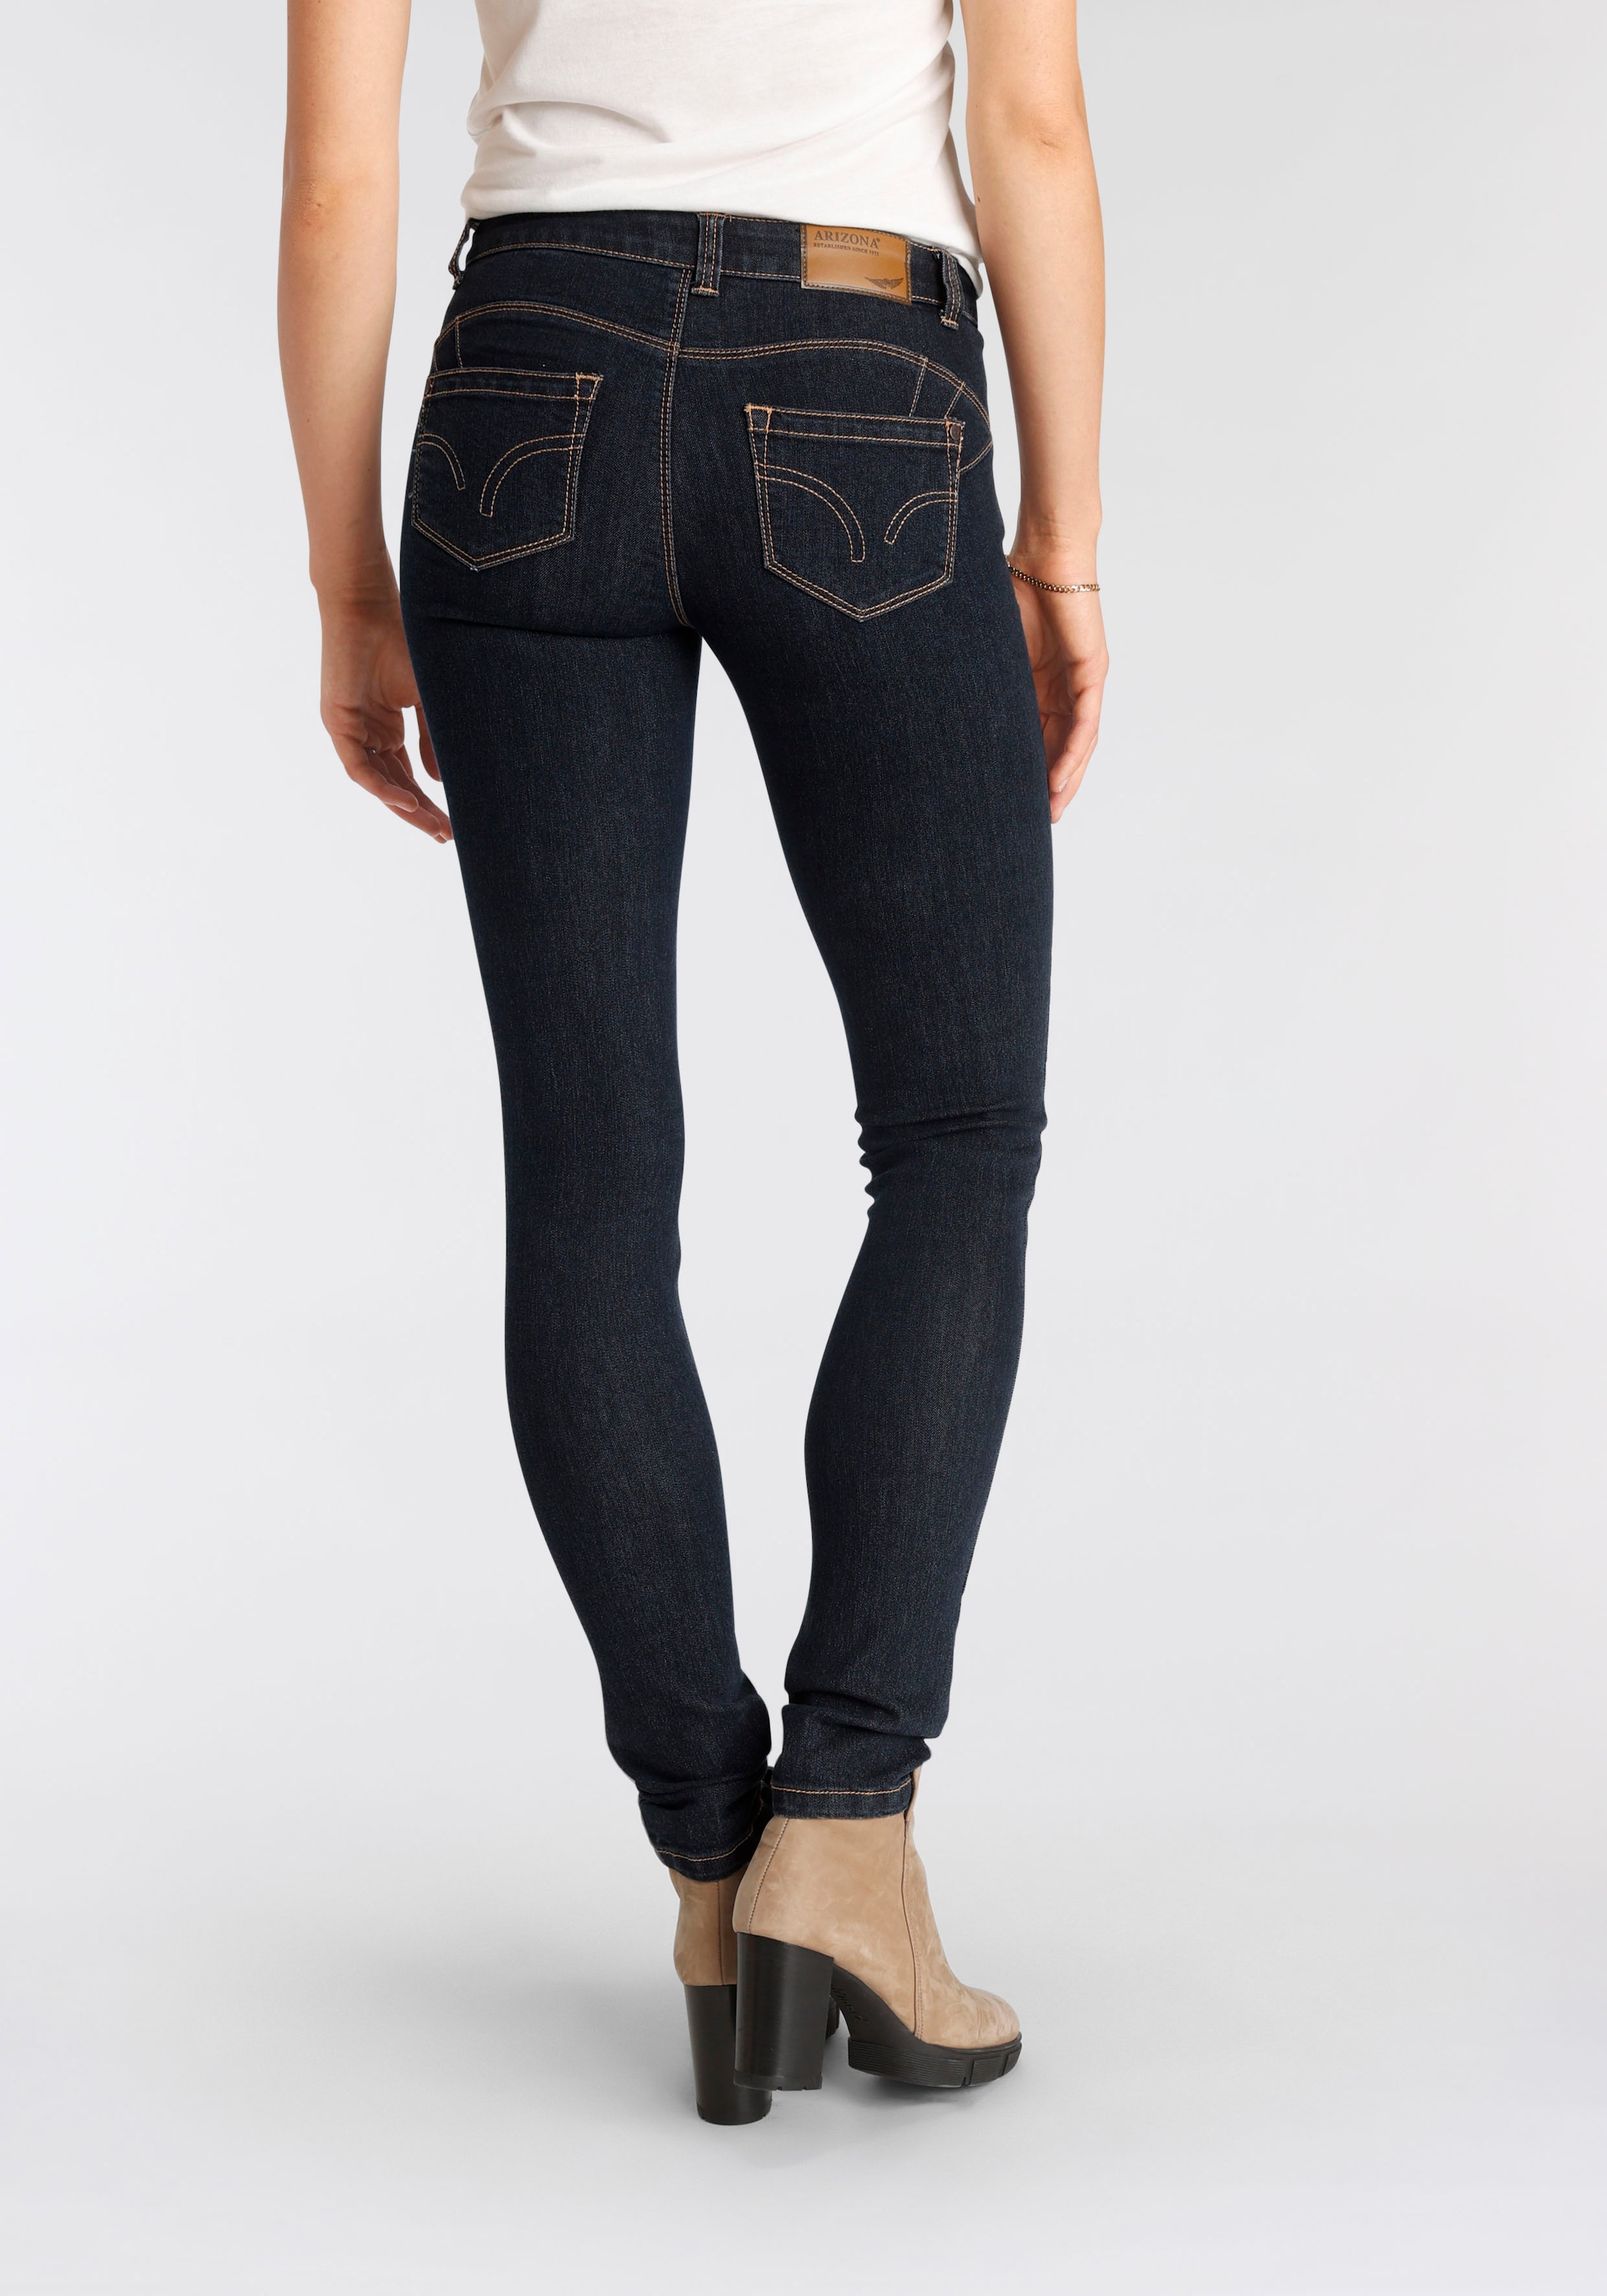 Nachhaltige Jeans - bestellen Damenmode günstige online